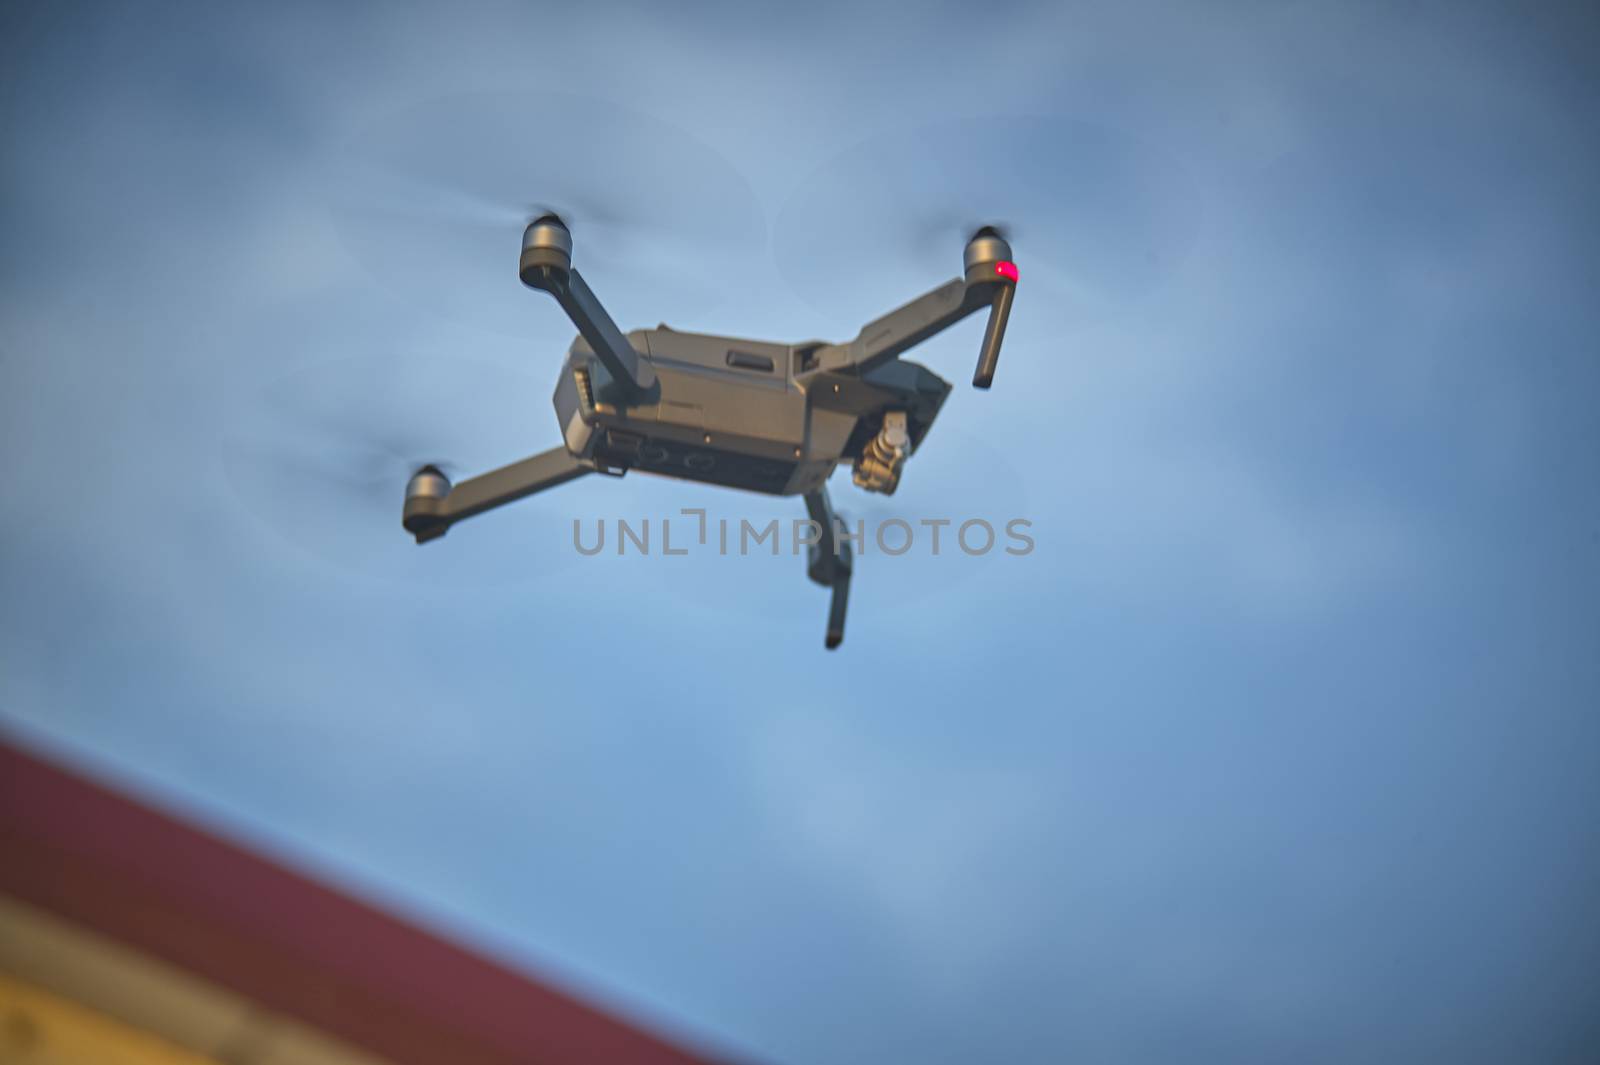 Drone in flight by pippocarlot